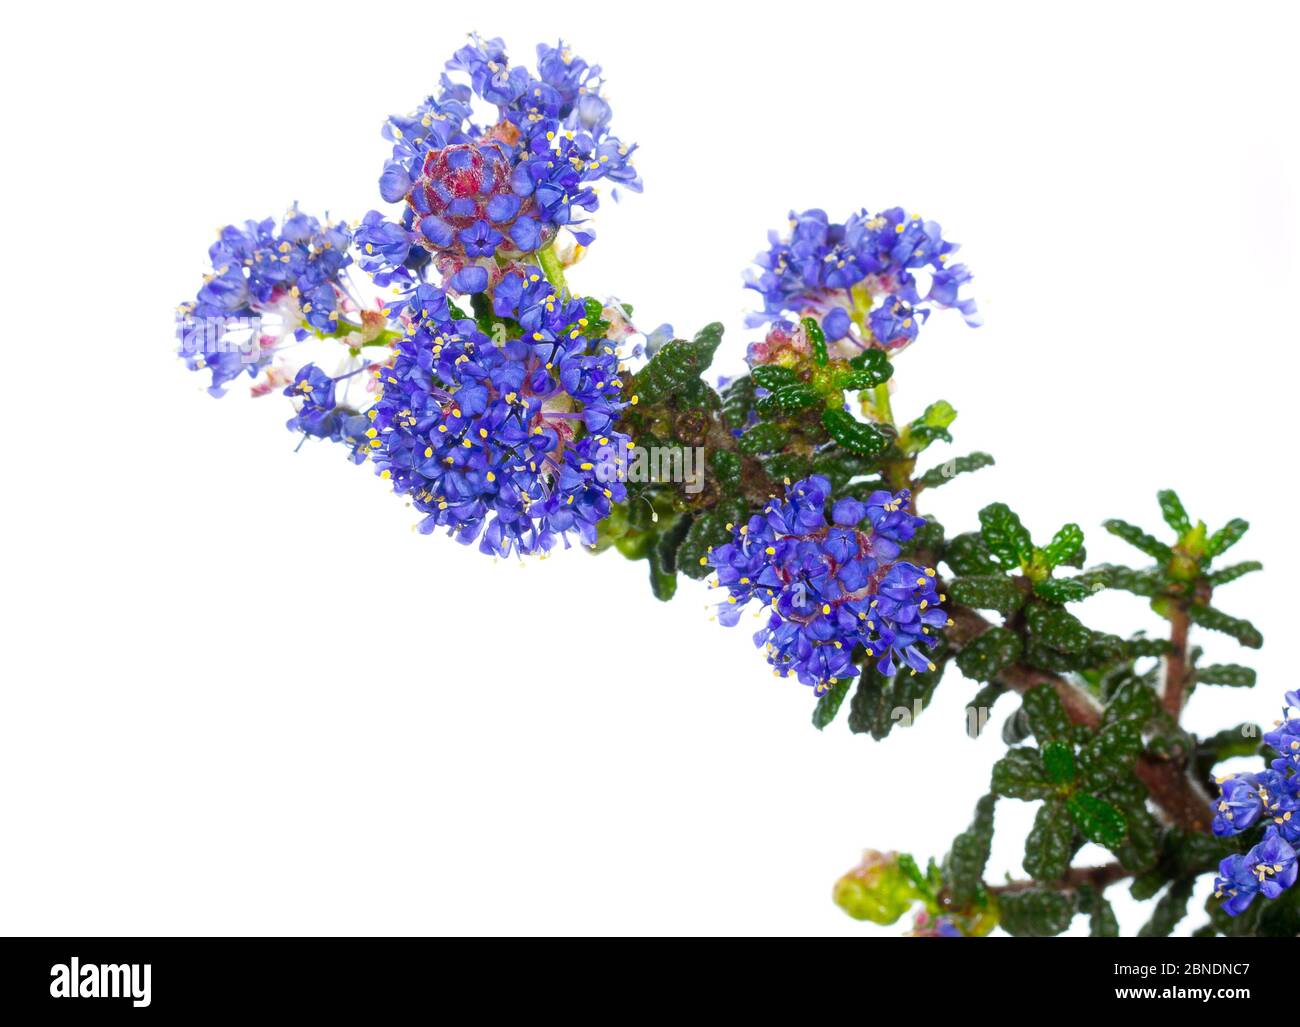 Cultivar de lilas de montagne de Californie (Ceanothus 'concha'). San Diego Bay, Californie, États-Unis, février. Meetyourneighbors.net projet. Banque D'Images